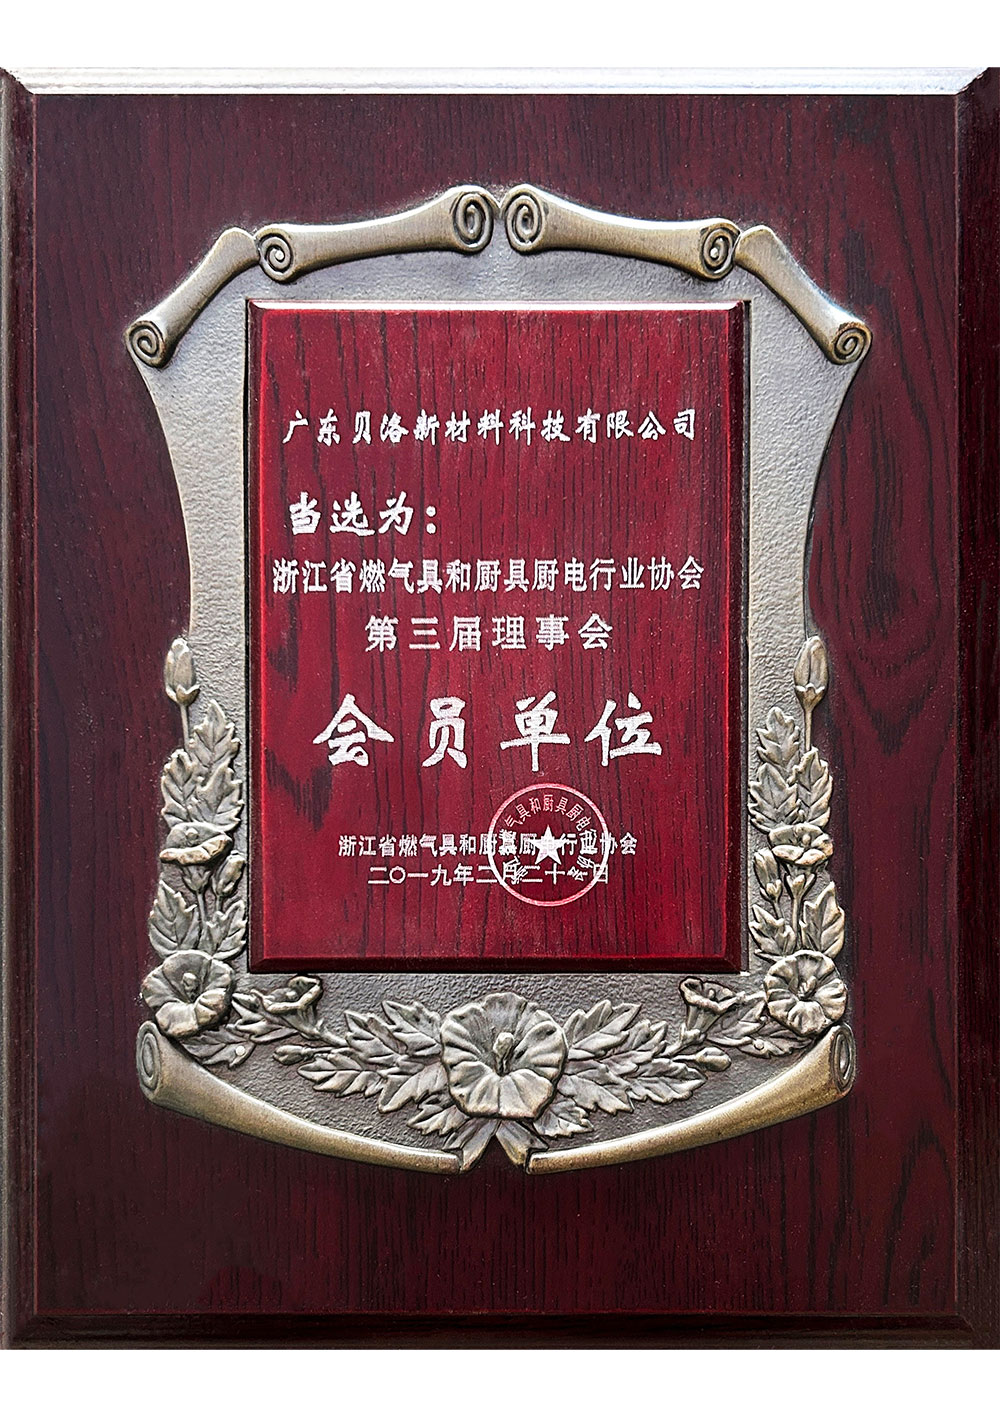 浙江省燃气具和厨具厨电行业协会第三届理事会会员单位 201902